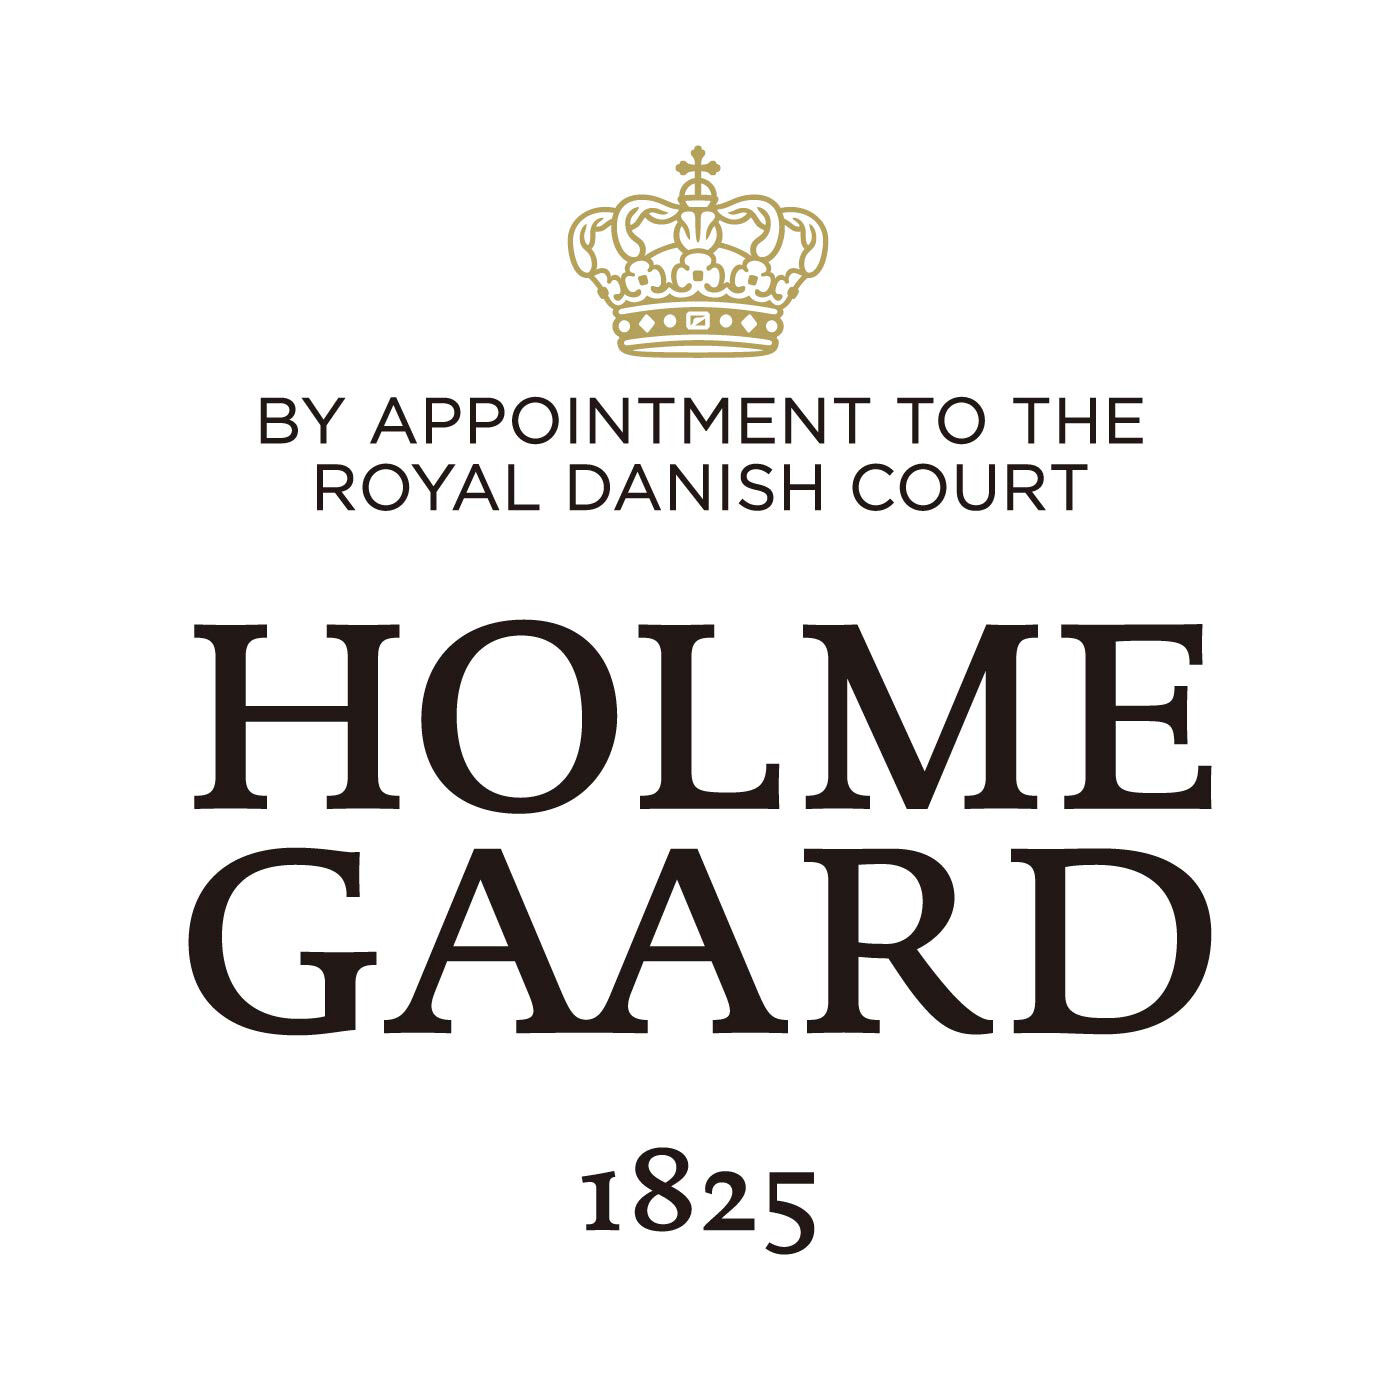 SeeMONO|ガラスのウェーブが美しい　一年中飾れるクリスマスツリー〈ＸＬ〉／ホルムガード|HOLMEGAARD（ホルムガード）は、1825年にデンマークに生まれた伝統あるガラスブランドです。1900年代、多くの芸術家が手掛け始めるホルムガードの商品は、そのクオリティの高さからデンマーク王室 御用達ブランドに選ばれました。熟練の職人たちによる吹きガラス製法で生み出されるユニークなデ ザインのガラス製品は世界中の美術館に所蔵されています。